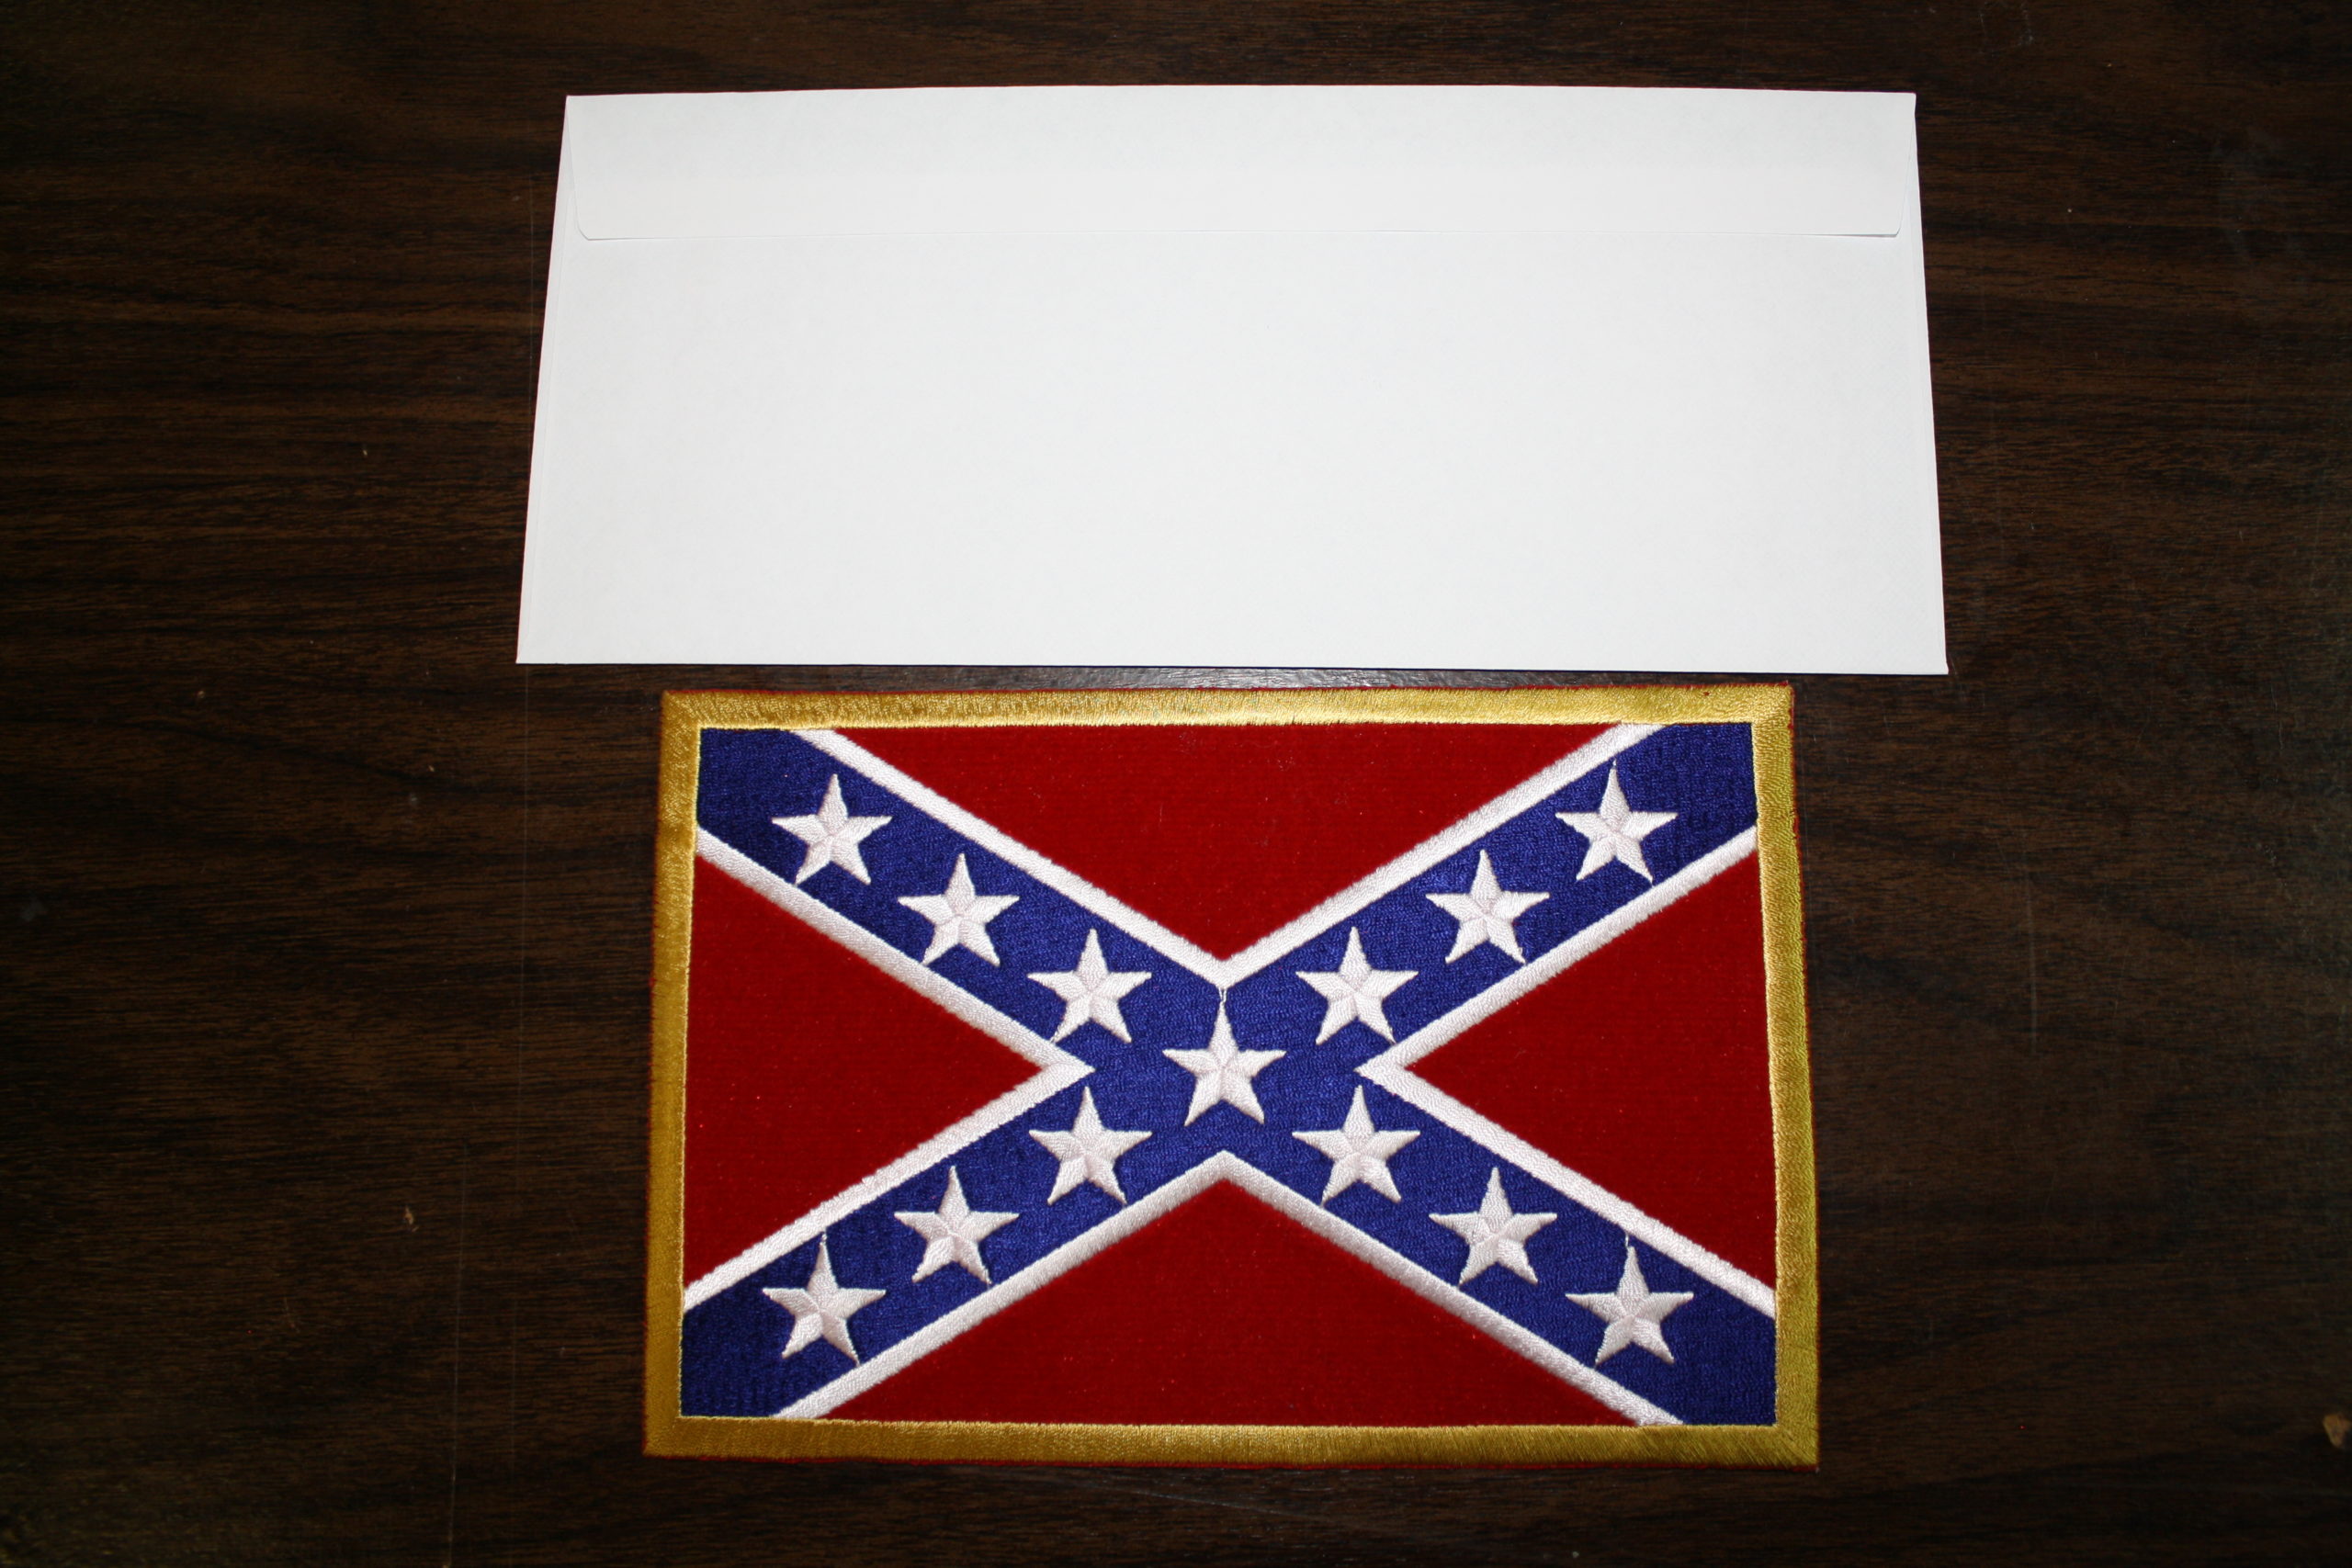 Large Rebel Flag Patch (Envelope for size comparison)